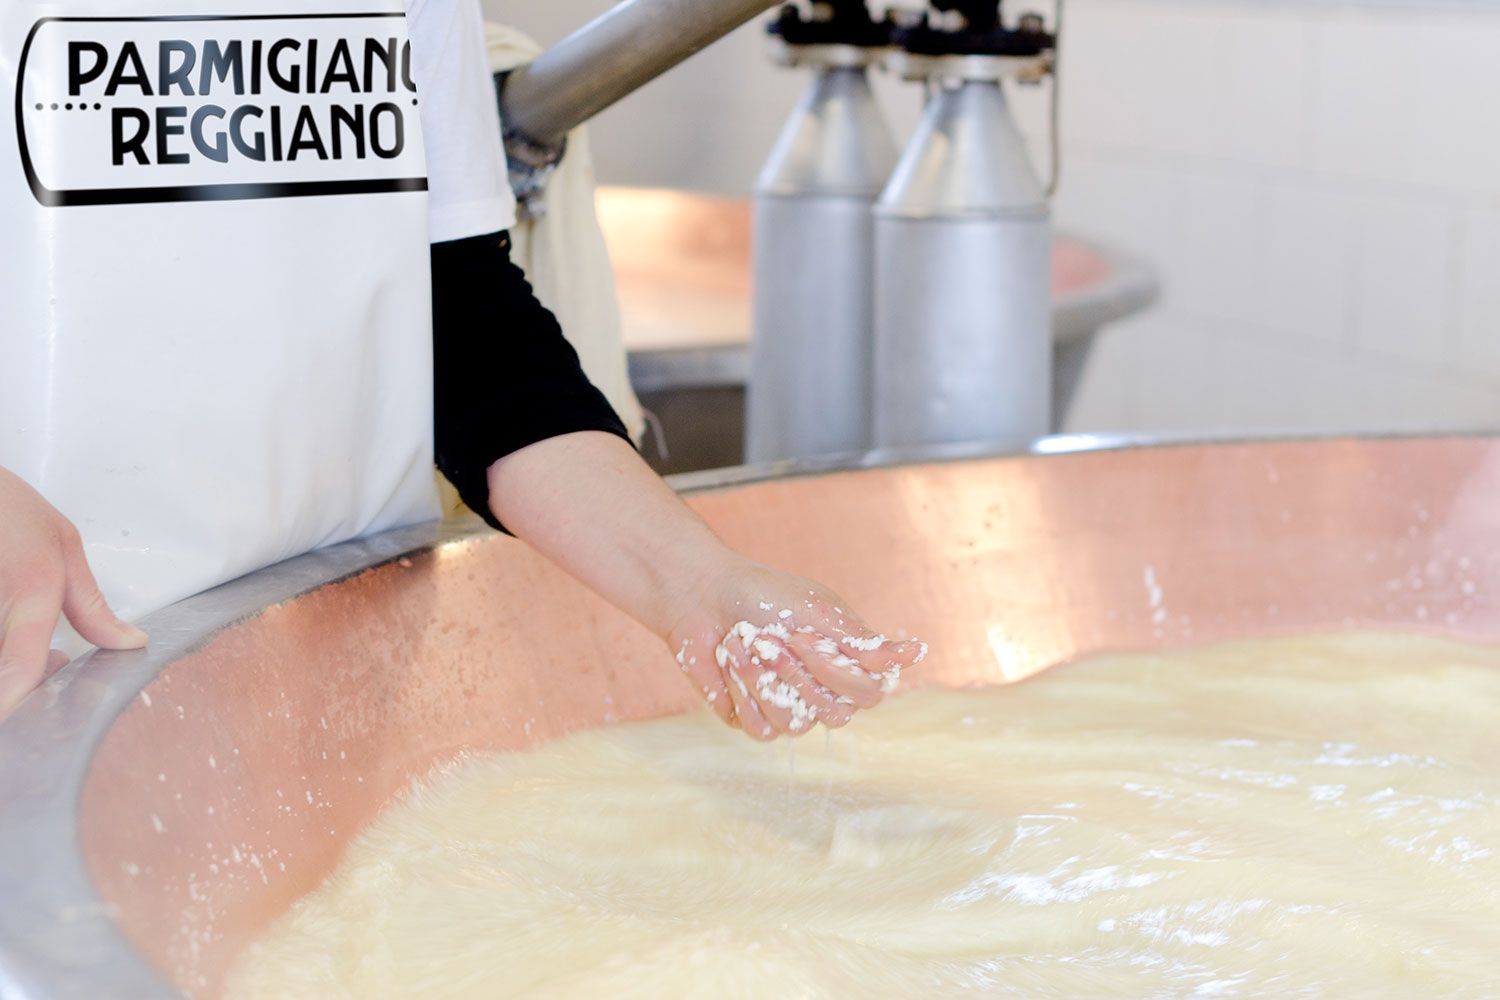 Auf dem Weg zum Parmesan: Beim Erhitzen der Milch wird die Größe der Granulate händisch geprüft